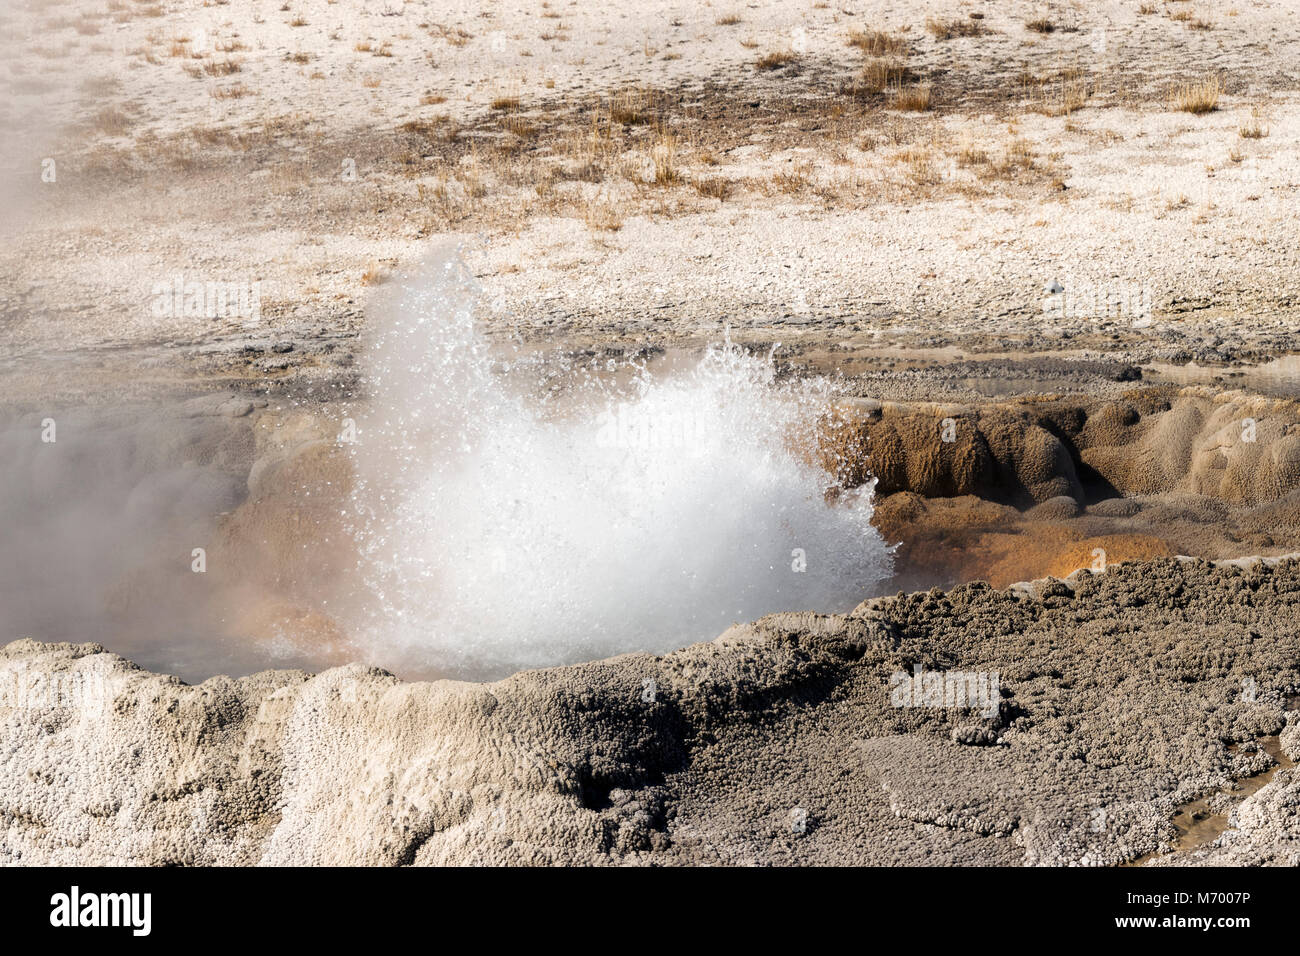 Eine der vielen geothermalen Merkmale im Yellowstone National Park, diese Funktionen ausbrechen spuckende überhitztem Wasser und Dampf. Stockfoto